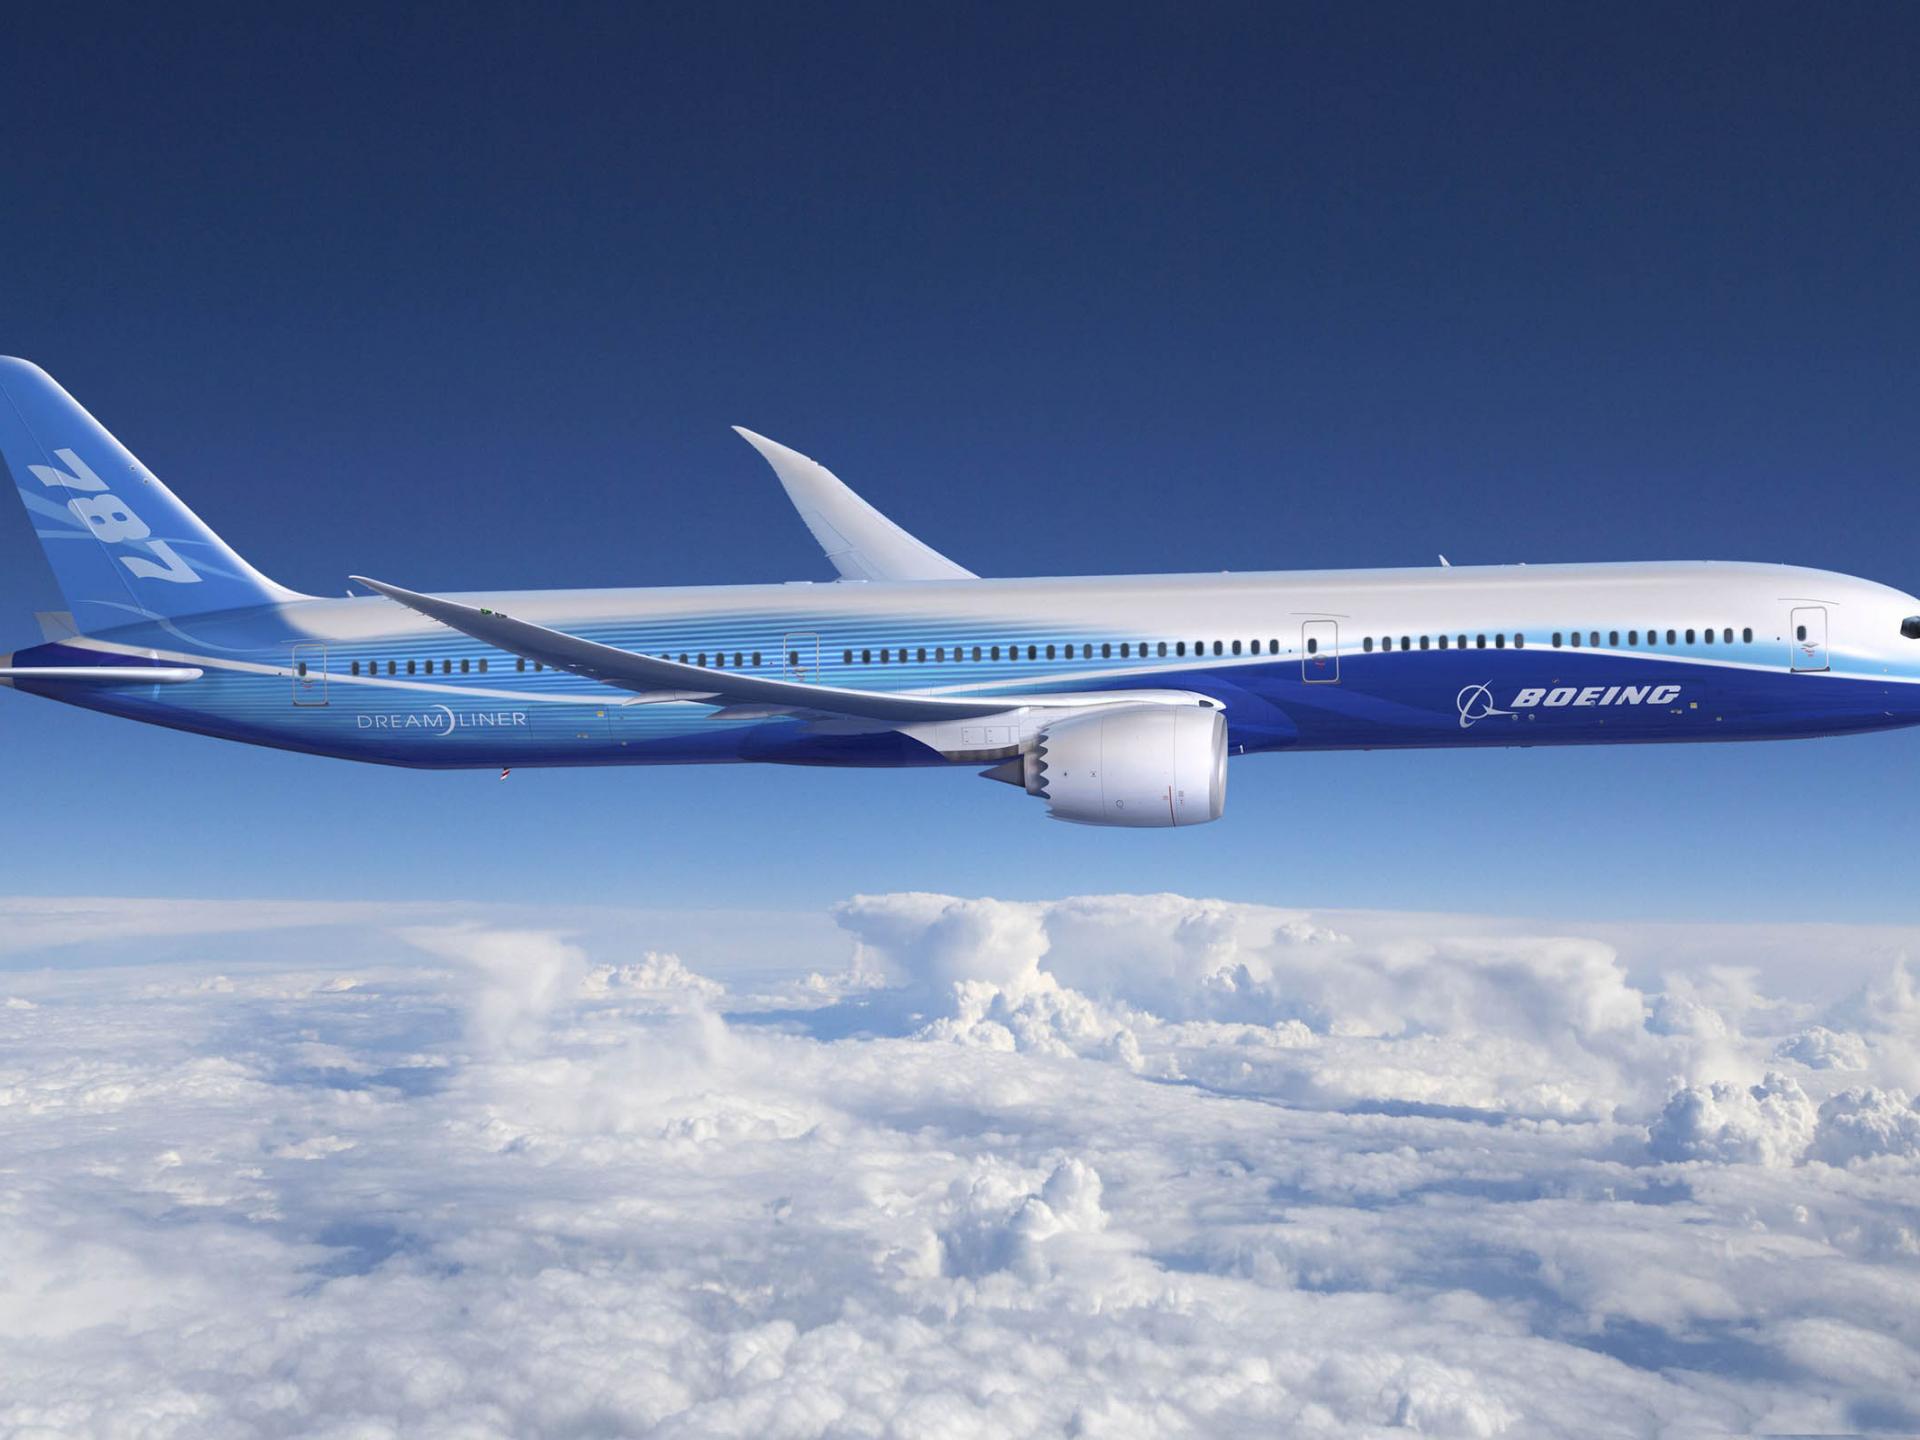 Boeing Dreamliner Aircraft Wallpaper